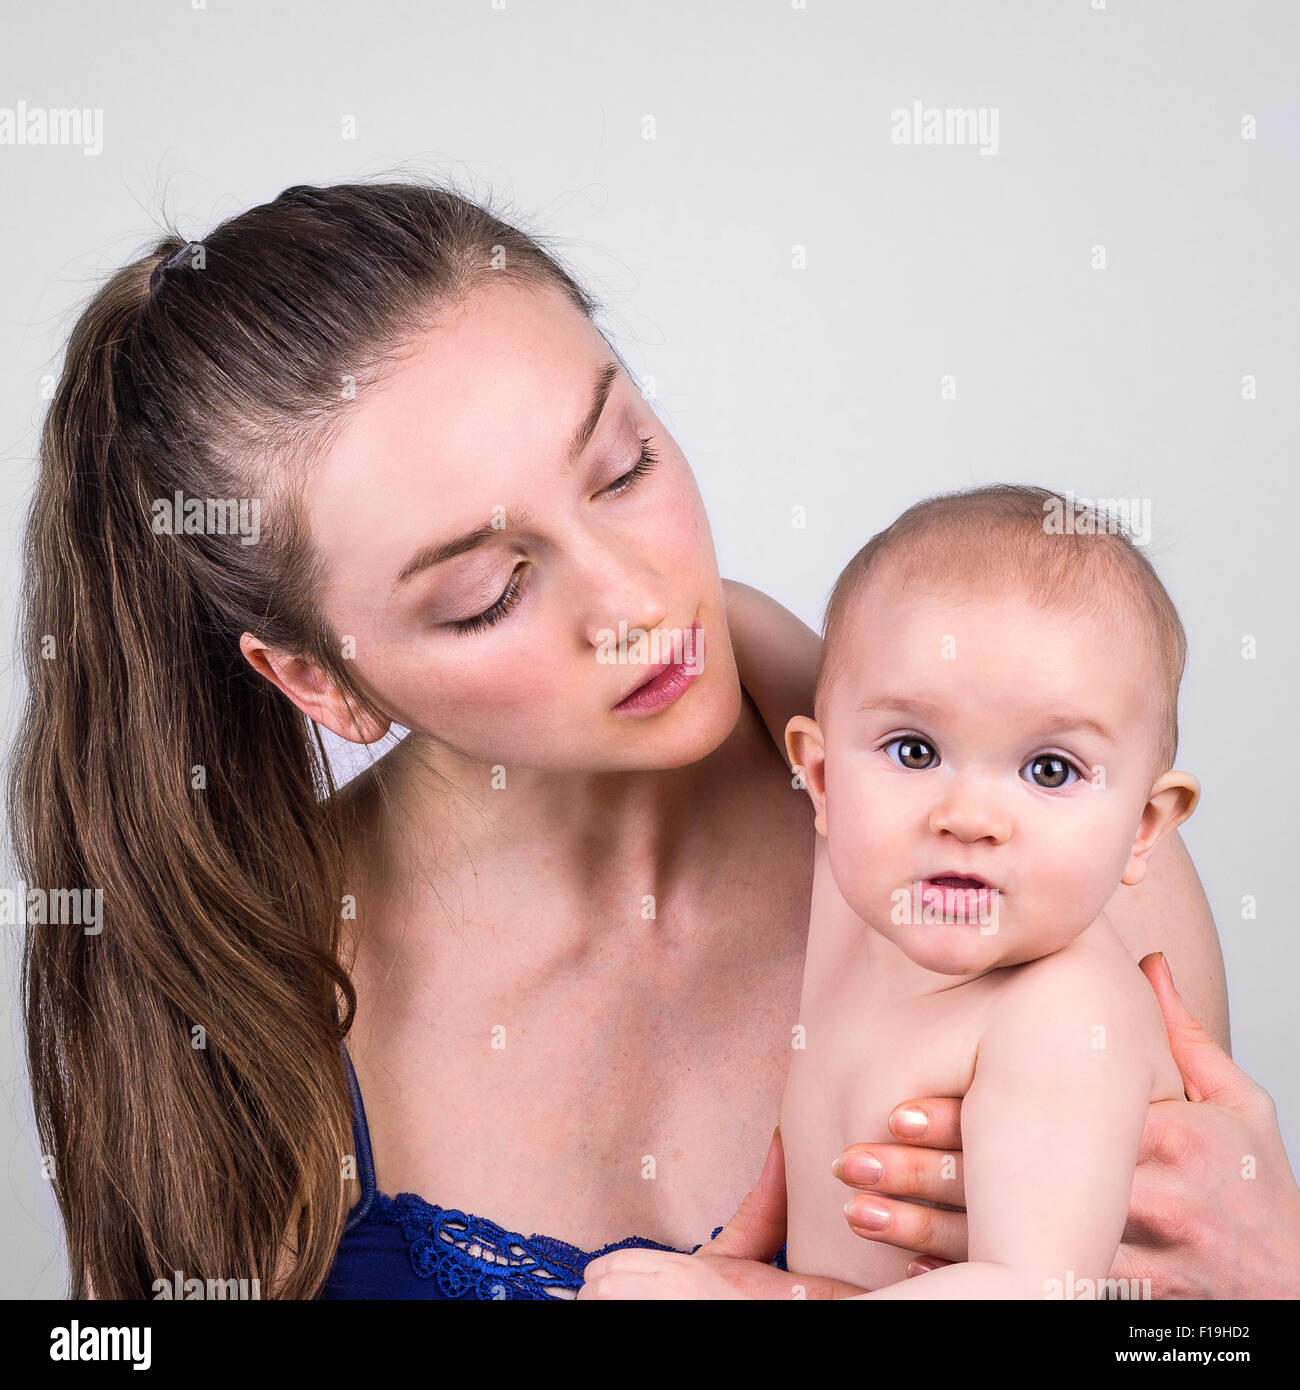 Carino il bambino e la madre ritratto su sfondo bianco Foto Stock